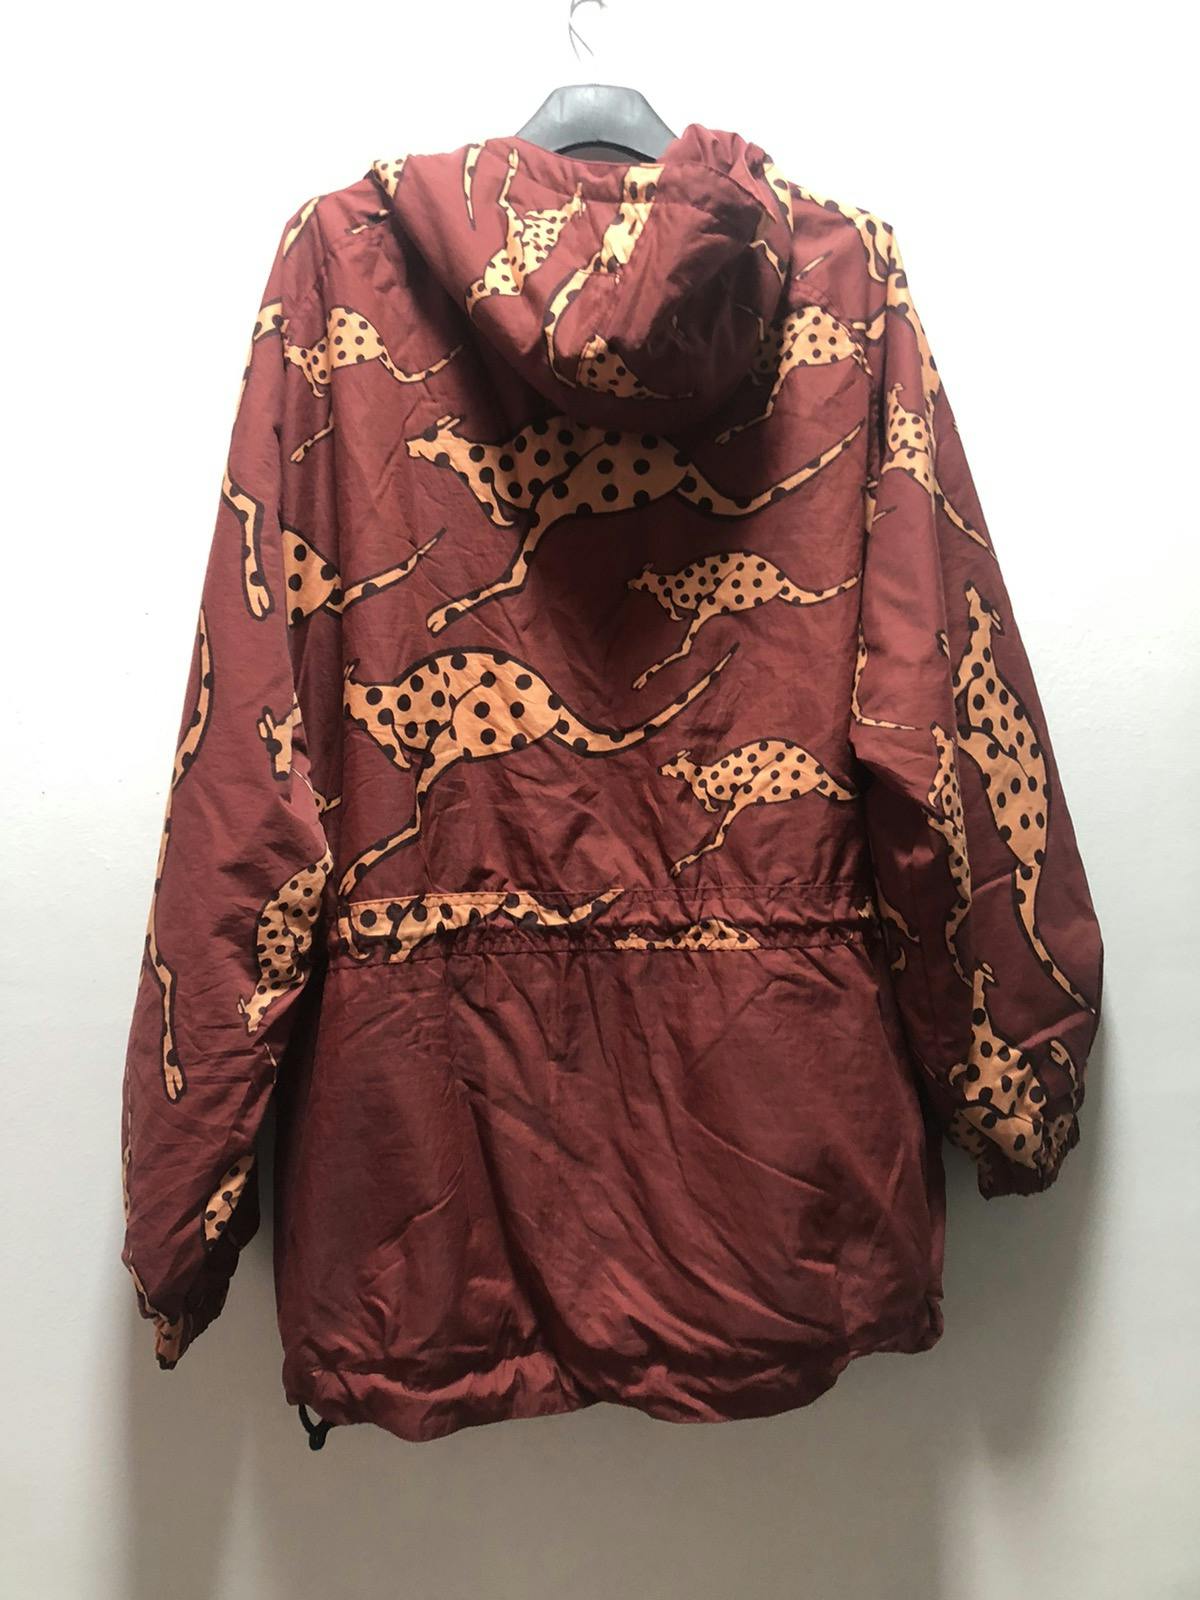 Vintage WINDSURFING CHIEMSEE Jacket By Asics Hoodie Half Zip - 5